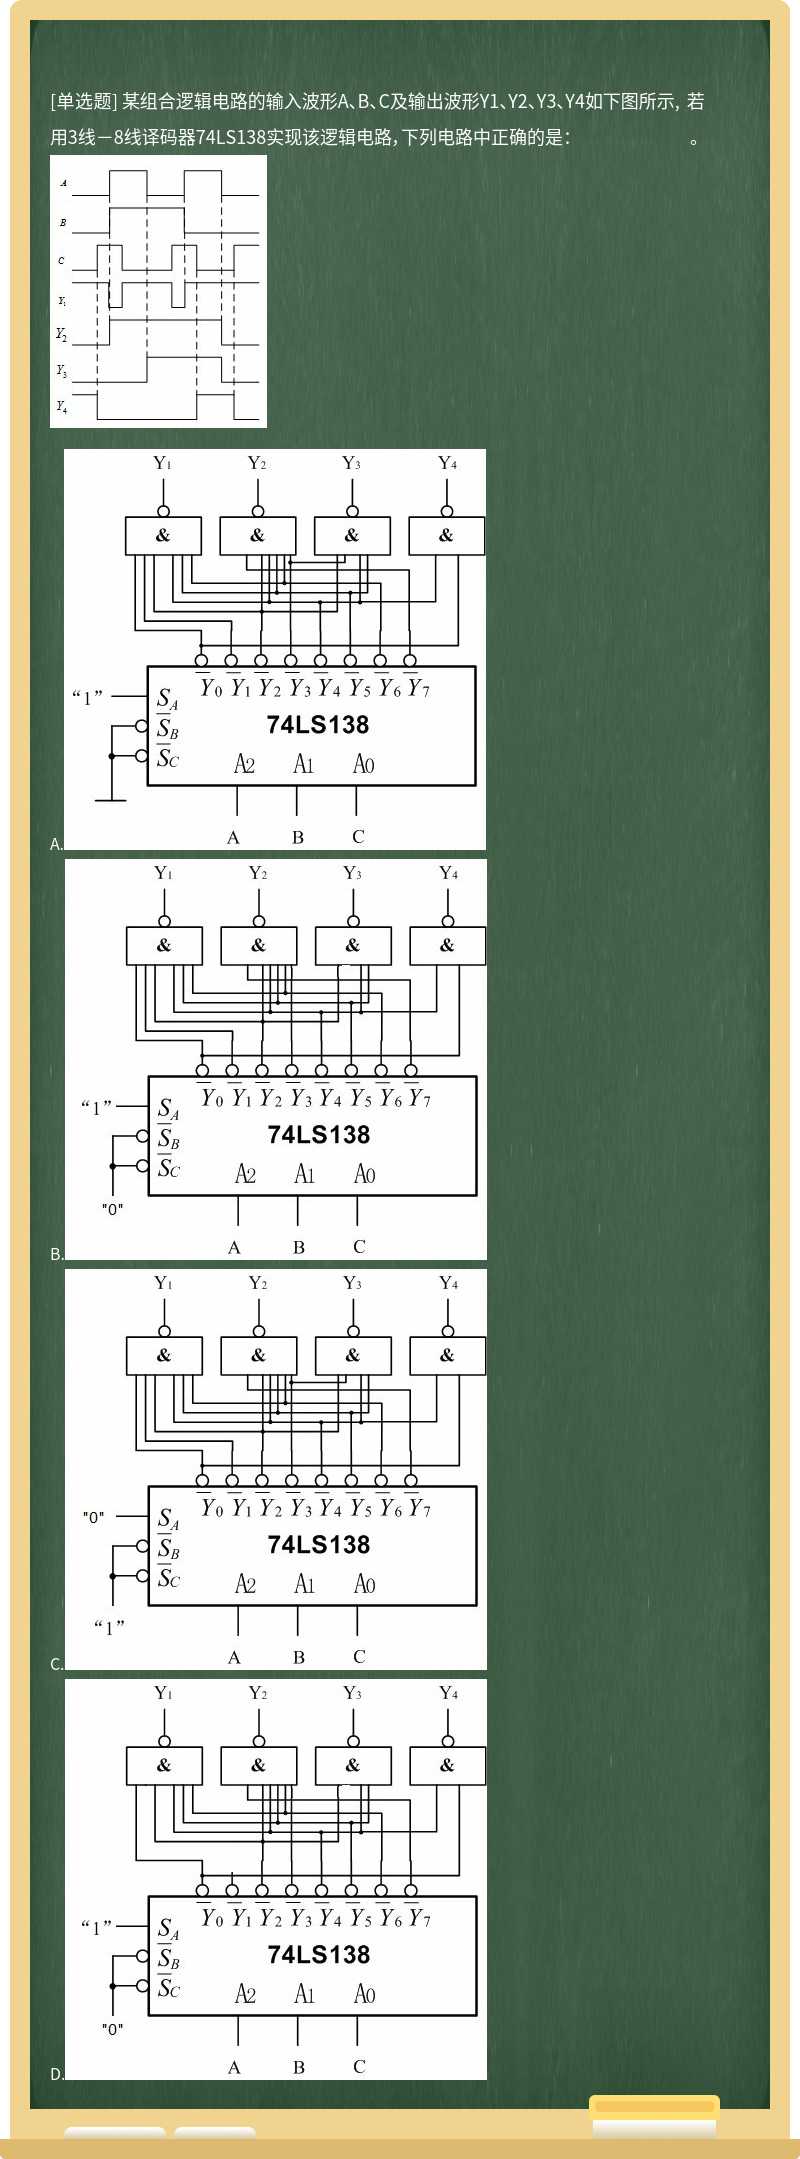 某组合逻辑电路的输入波形A、B、C及输出波形Y1、Y2、Y3、Y4如下图所示, 若用3线－8线译码器74LS138实现该逻辑电路，下列电路中正确的是： 。      